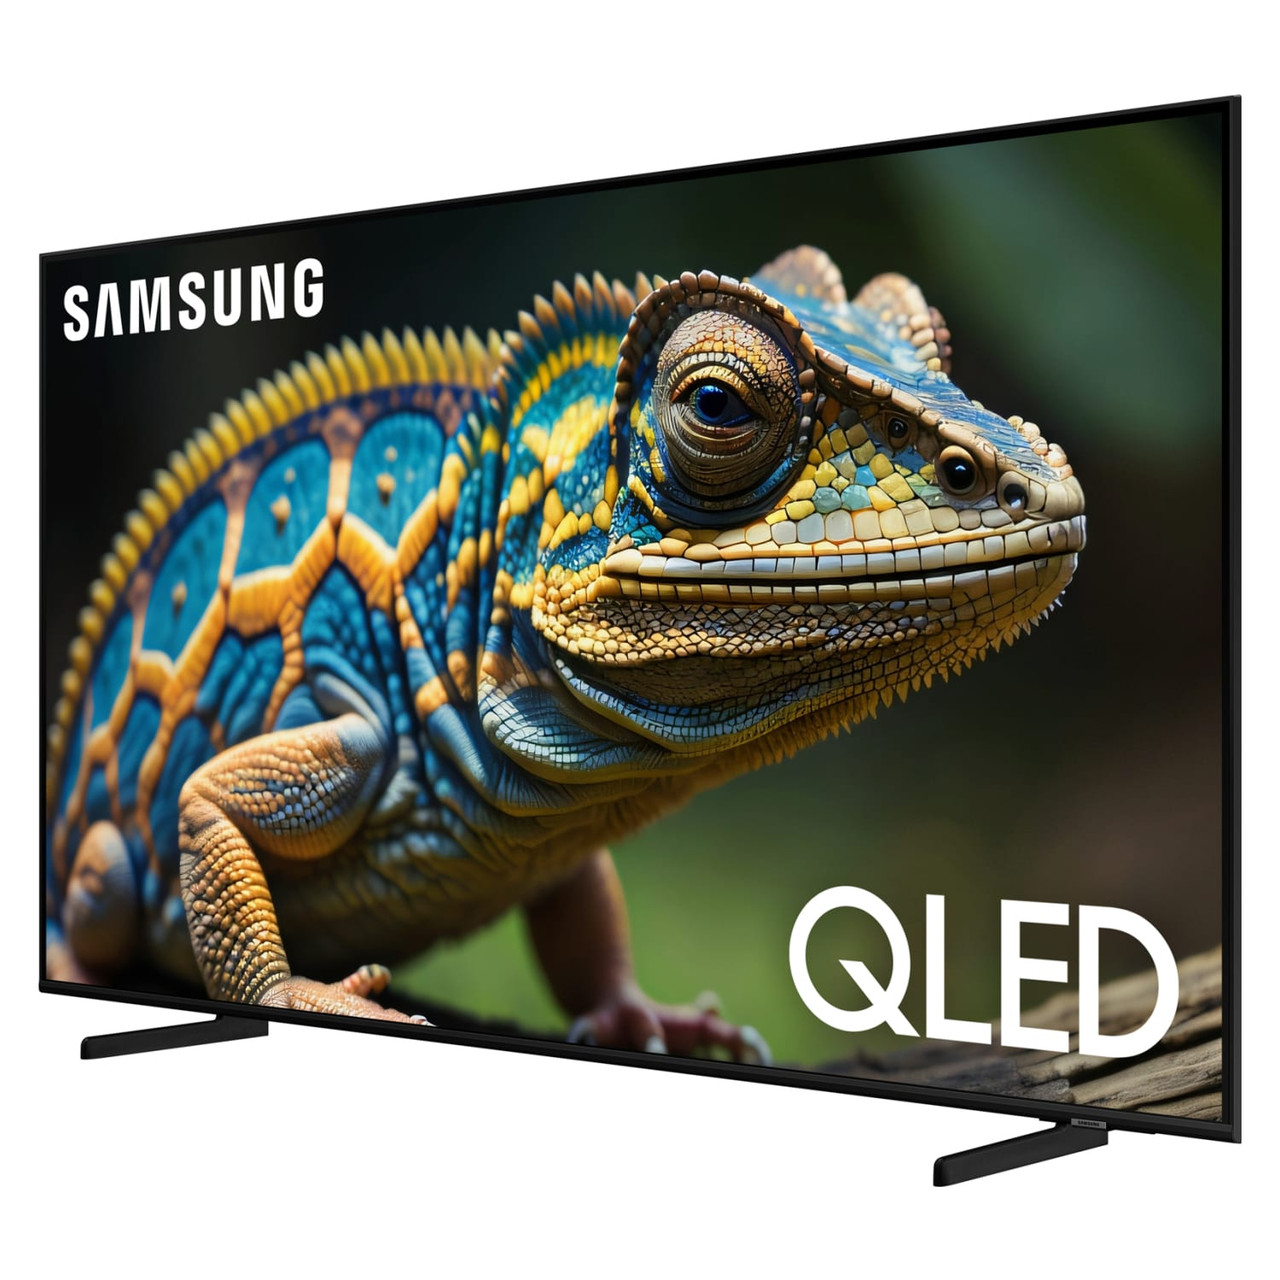 Samsung 55” Class Q60D QLED 4K Smart TV - QN55Q60DFXZA